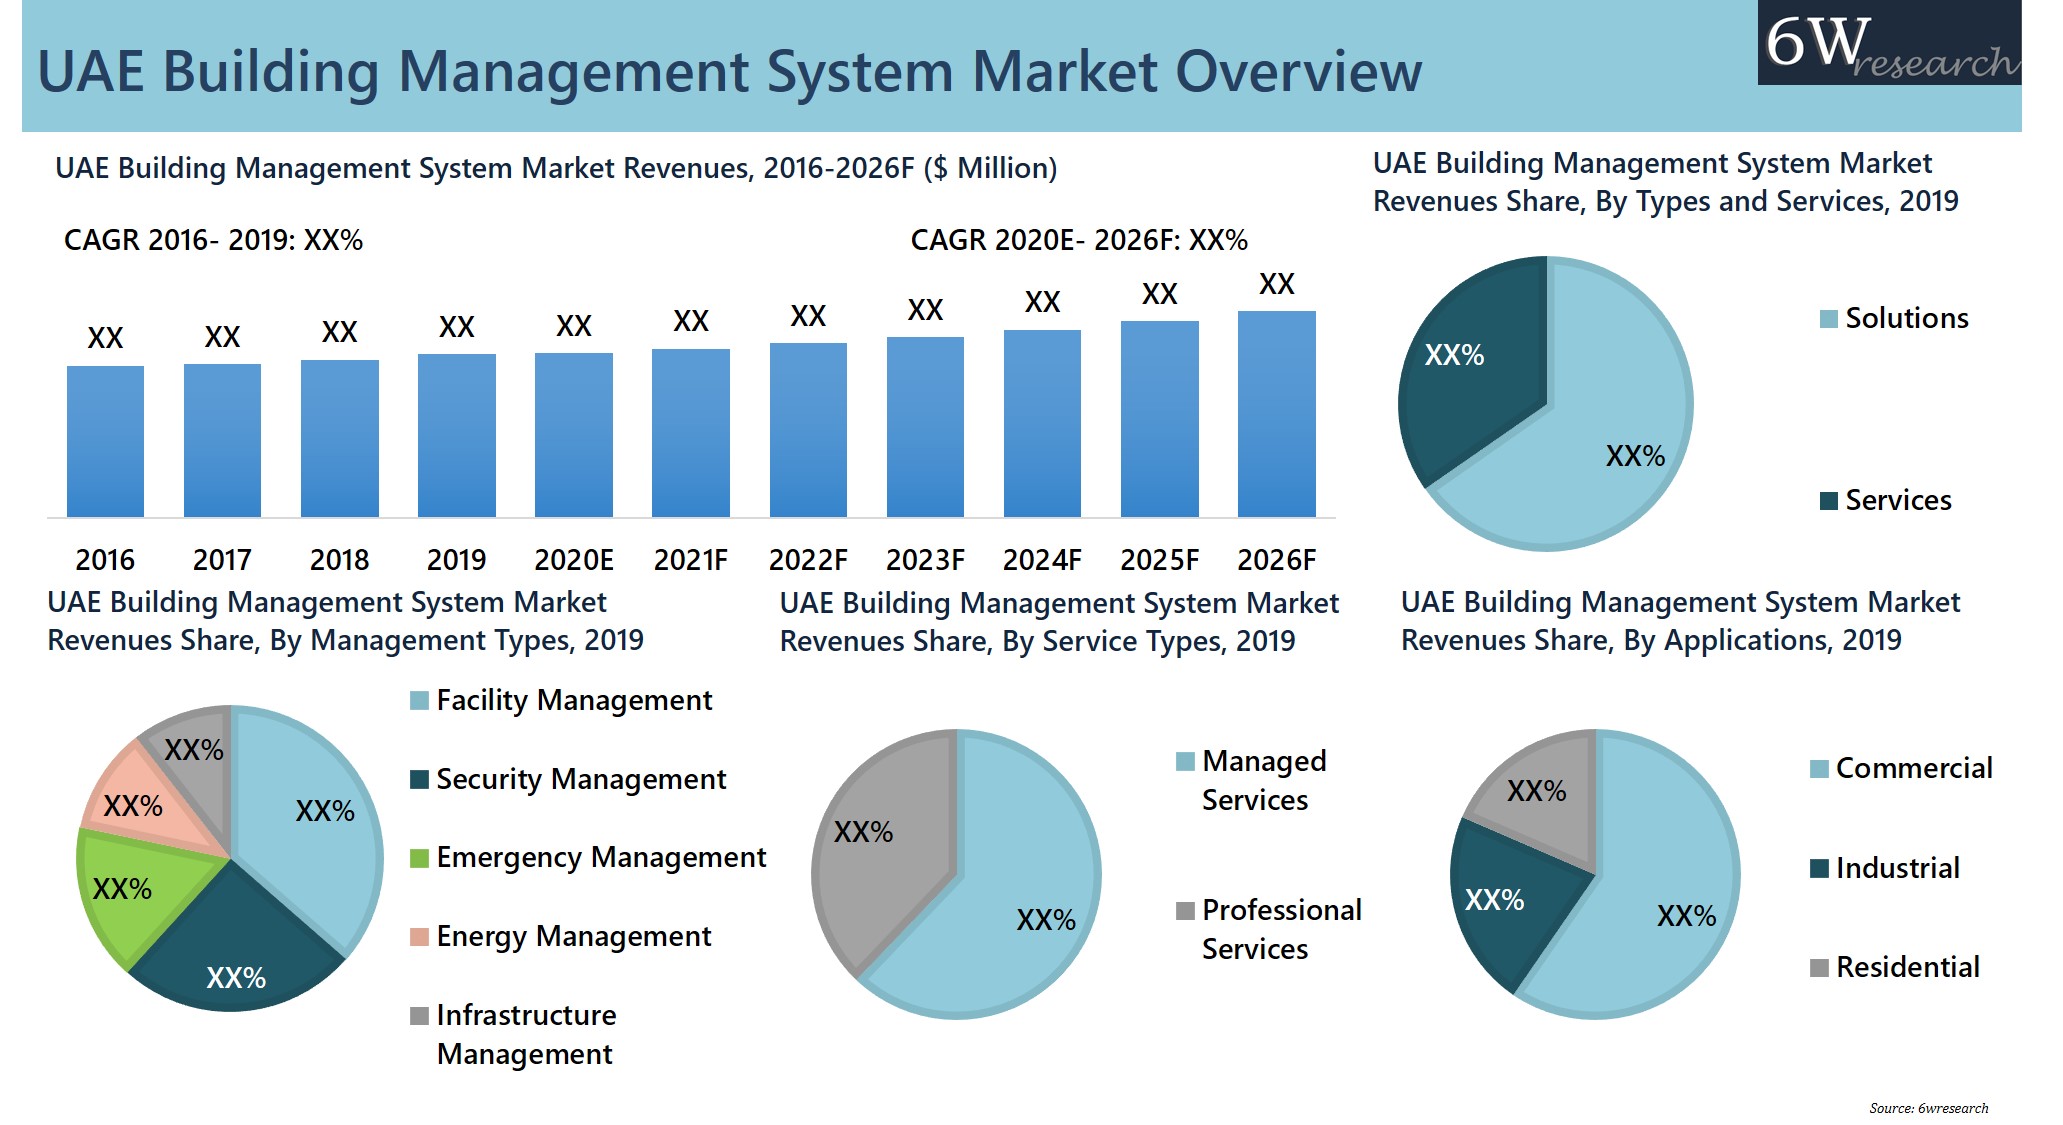 UAE Building Management System Market